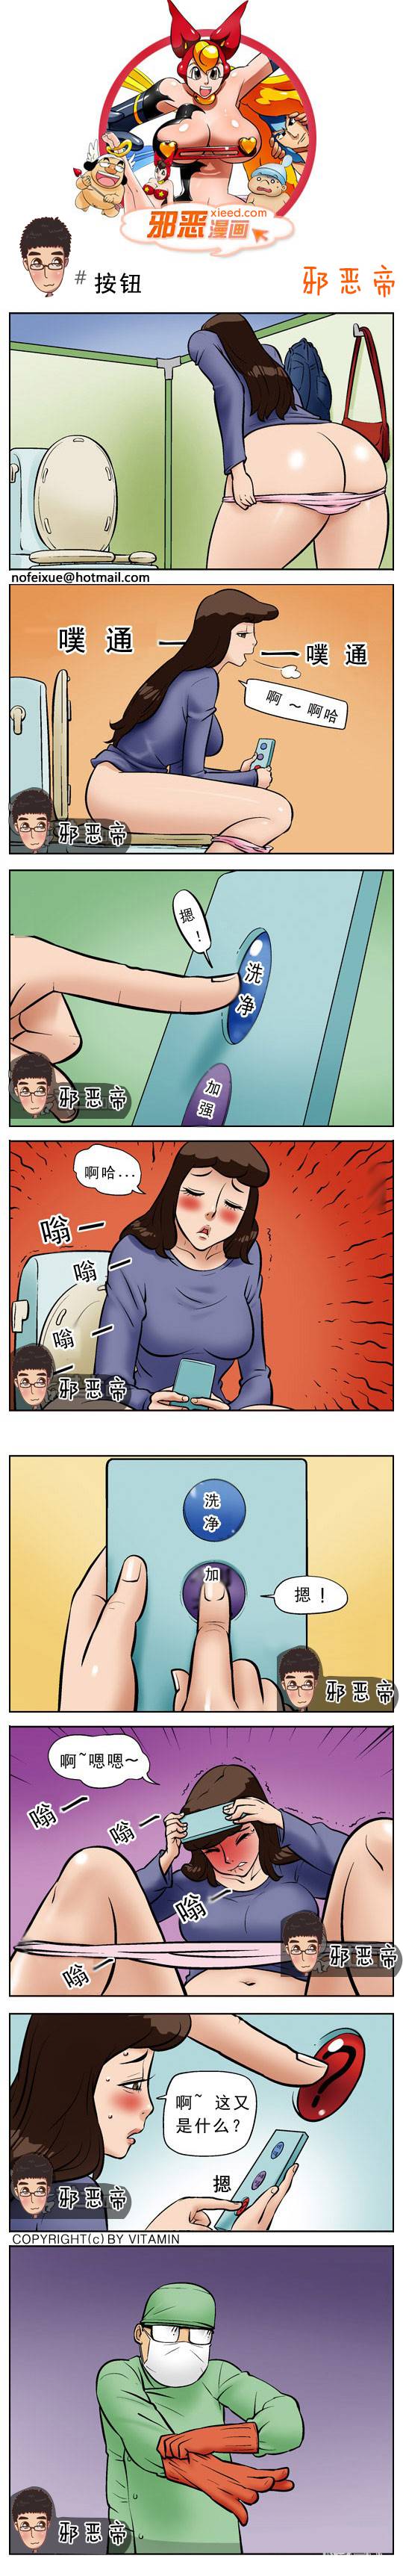 邪恶漫画爆笑囧图第331刊：白雪公主